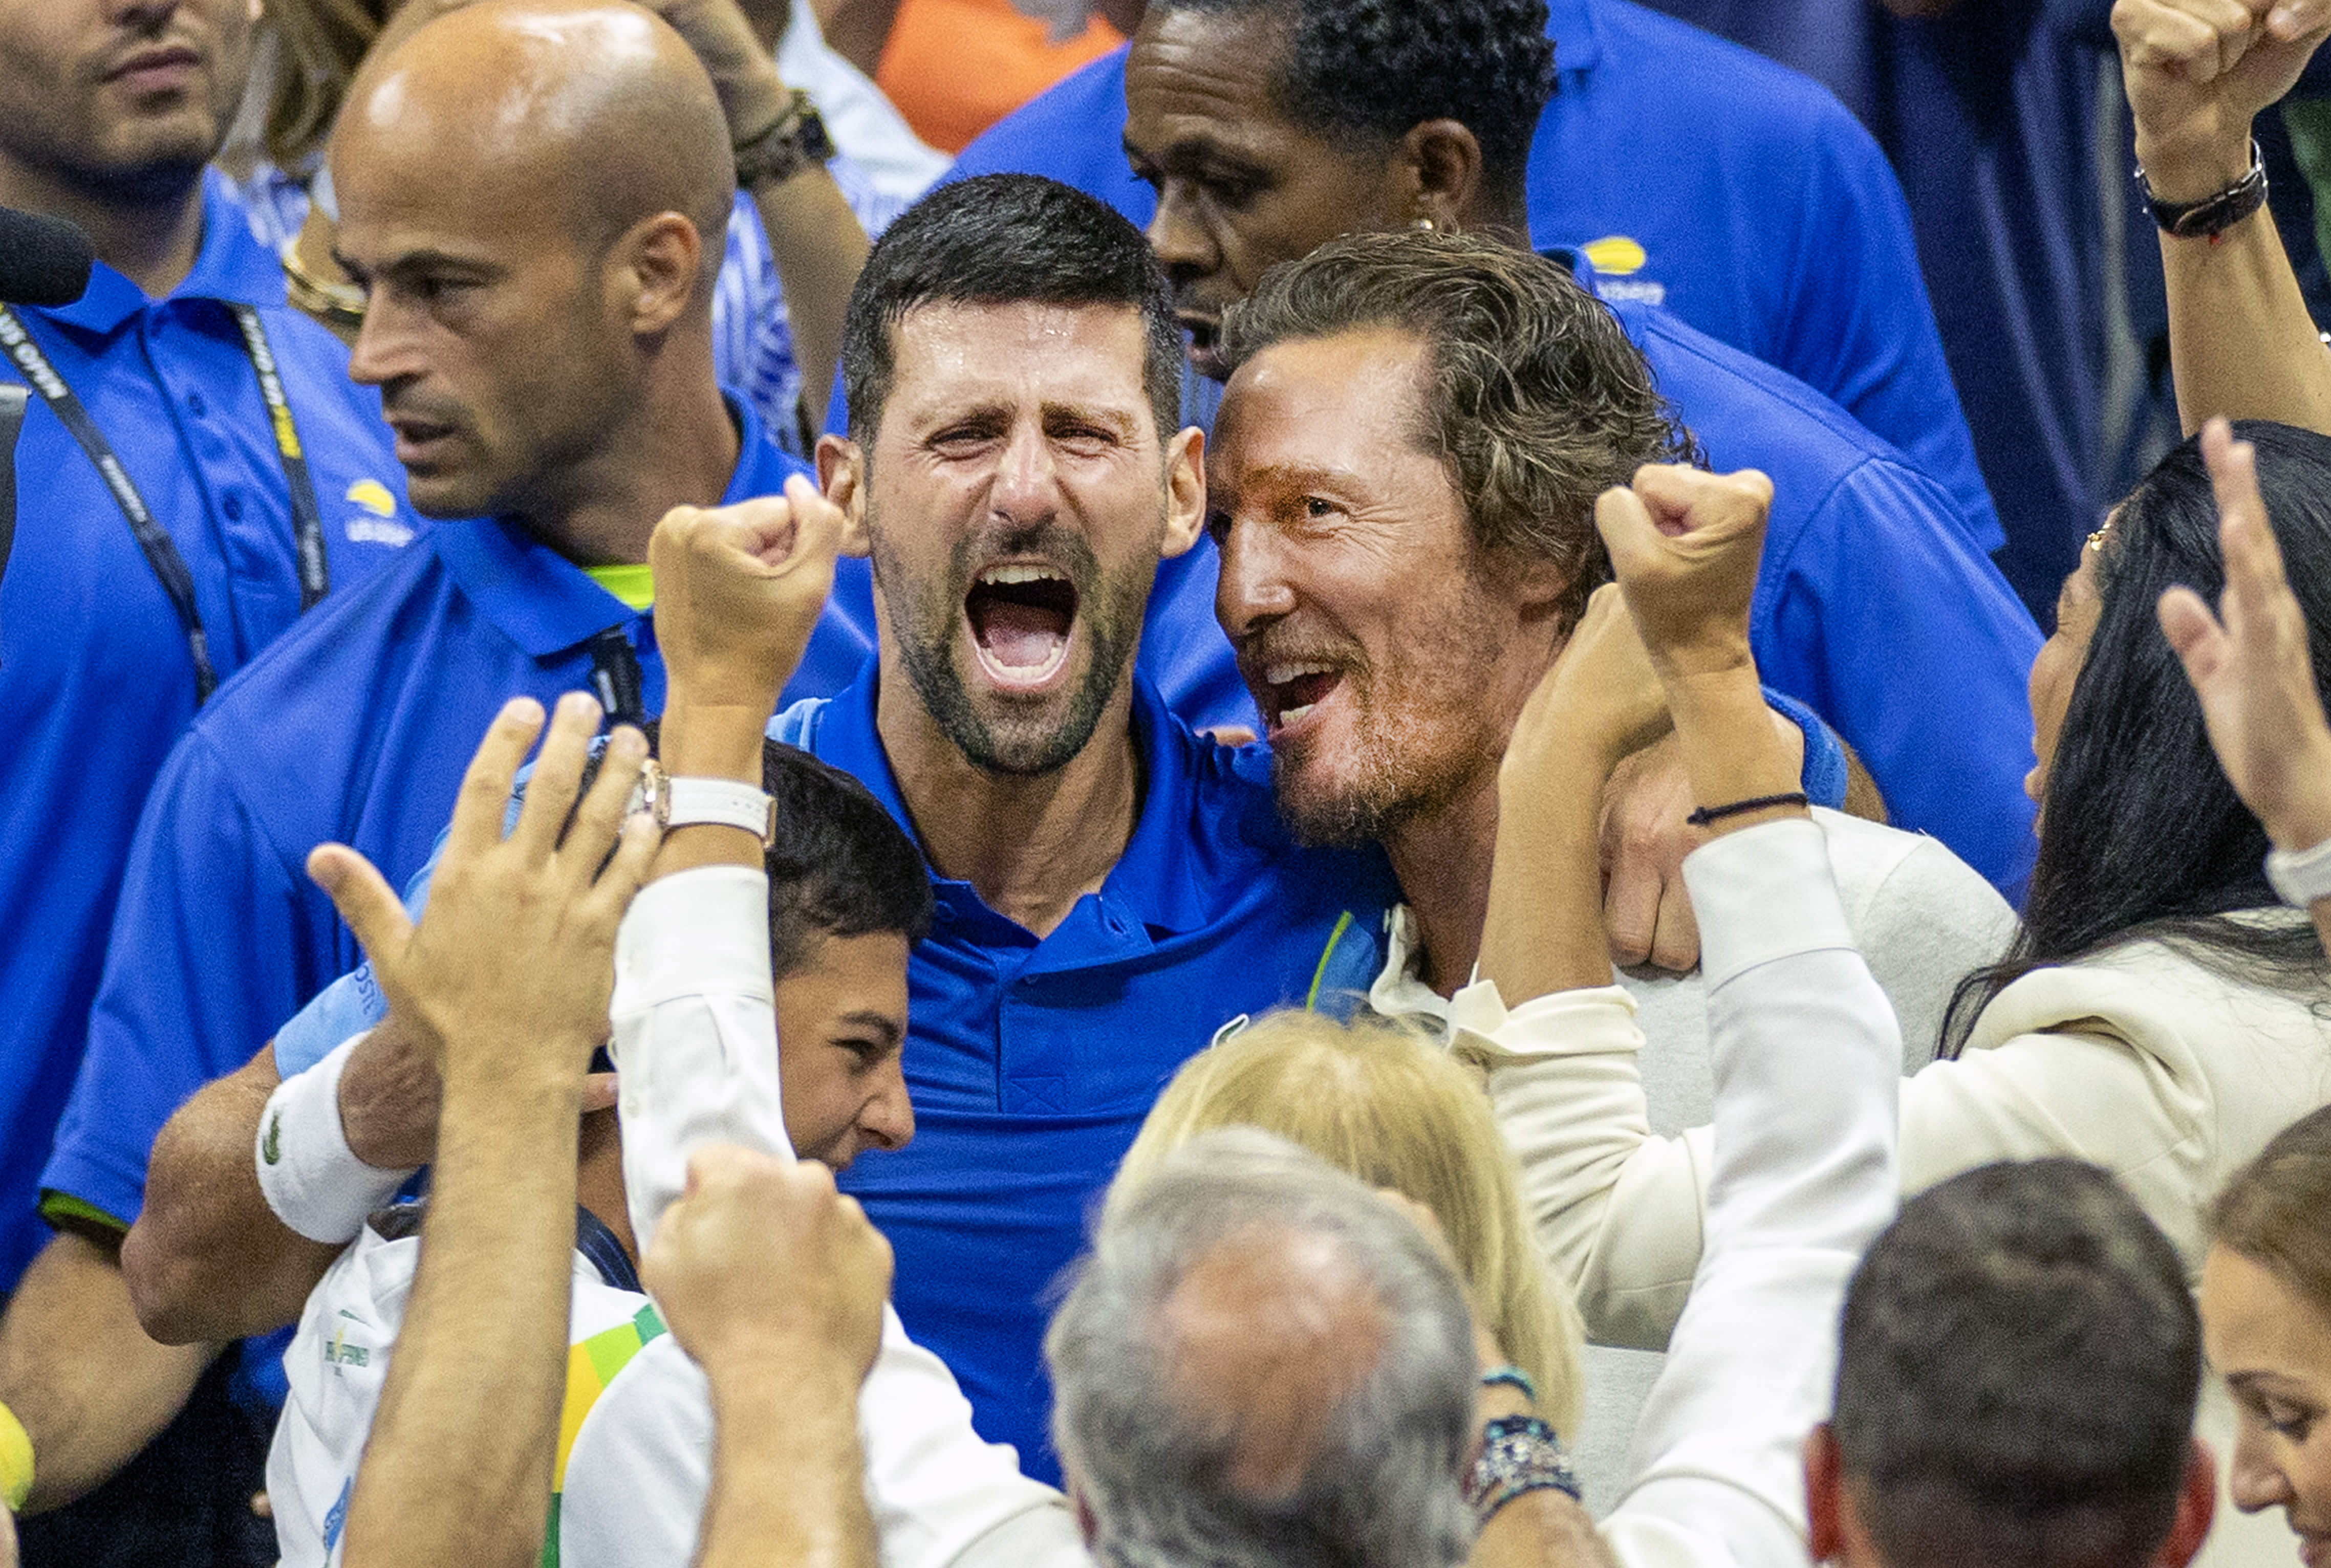 Matthew McConaughey christens Novak Djokovic 'GOAT' after back-to-back Roland Garros epics | Tennis.com